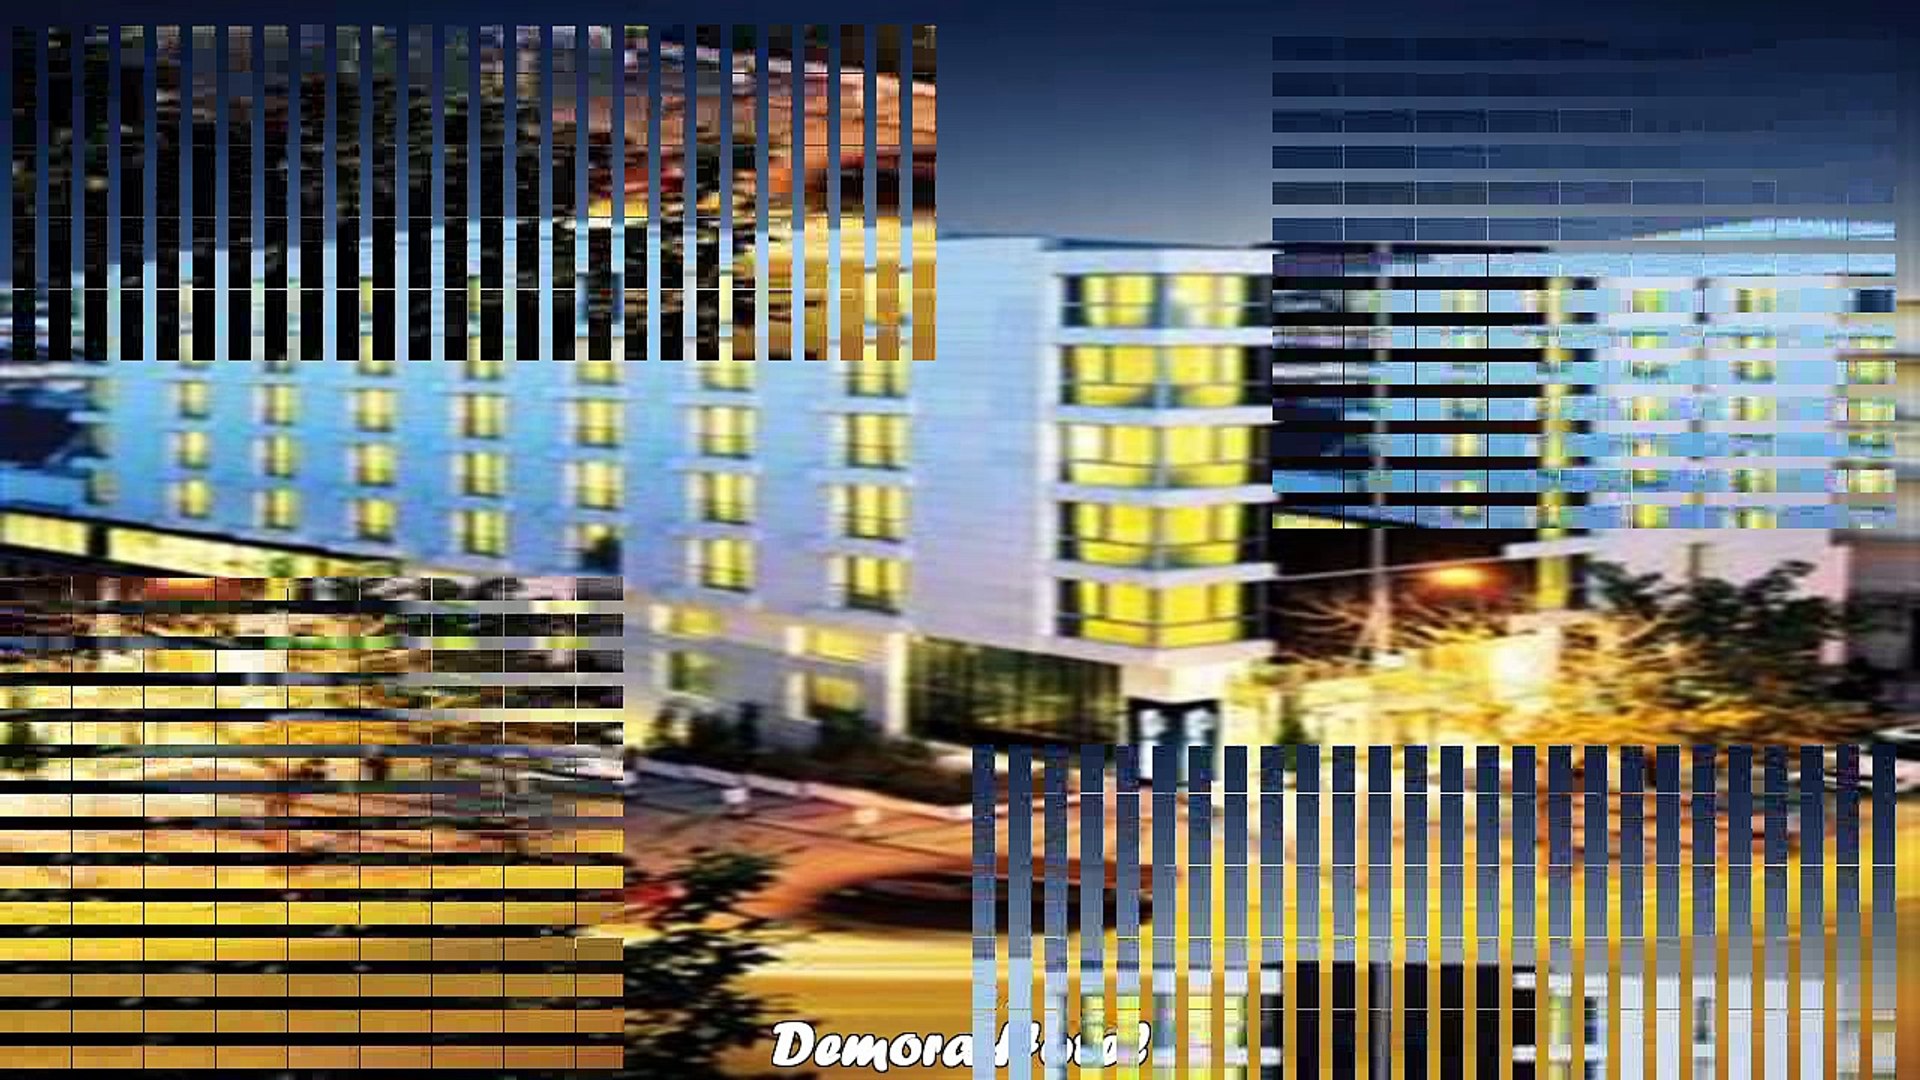 ⁣Hotels in Ankara Demora Hotel Turkey